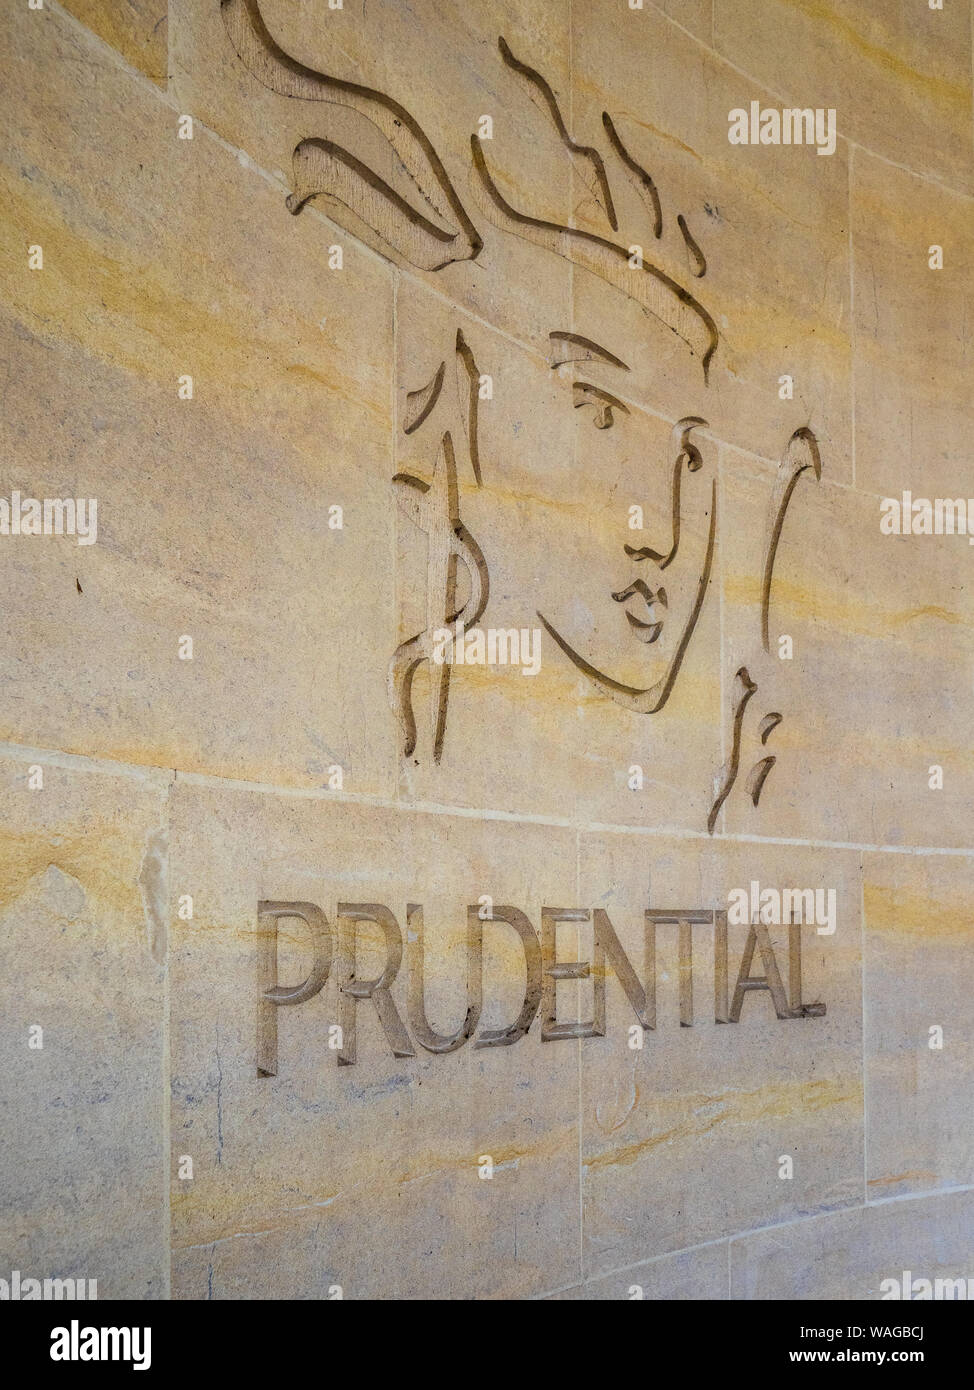 Logo Prudential London - Logo della Prudential Life Insurance and Financial Services Company scolpito nel muro di un edificio nel centro di Londra nel Regno Unito Foto Stock